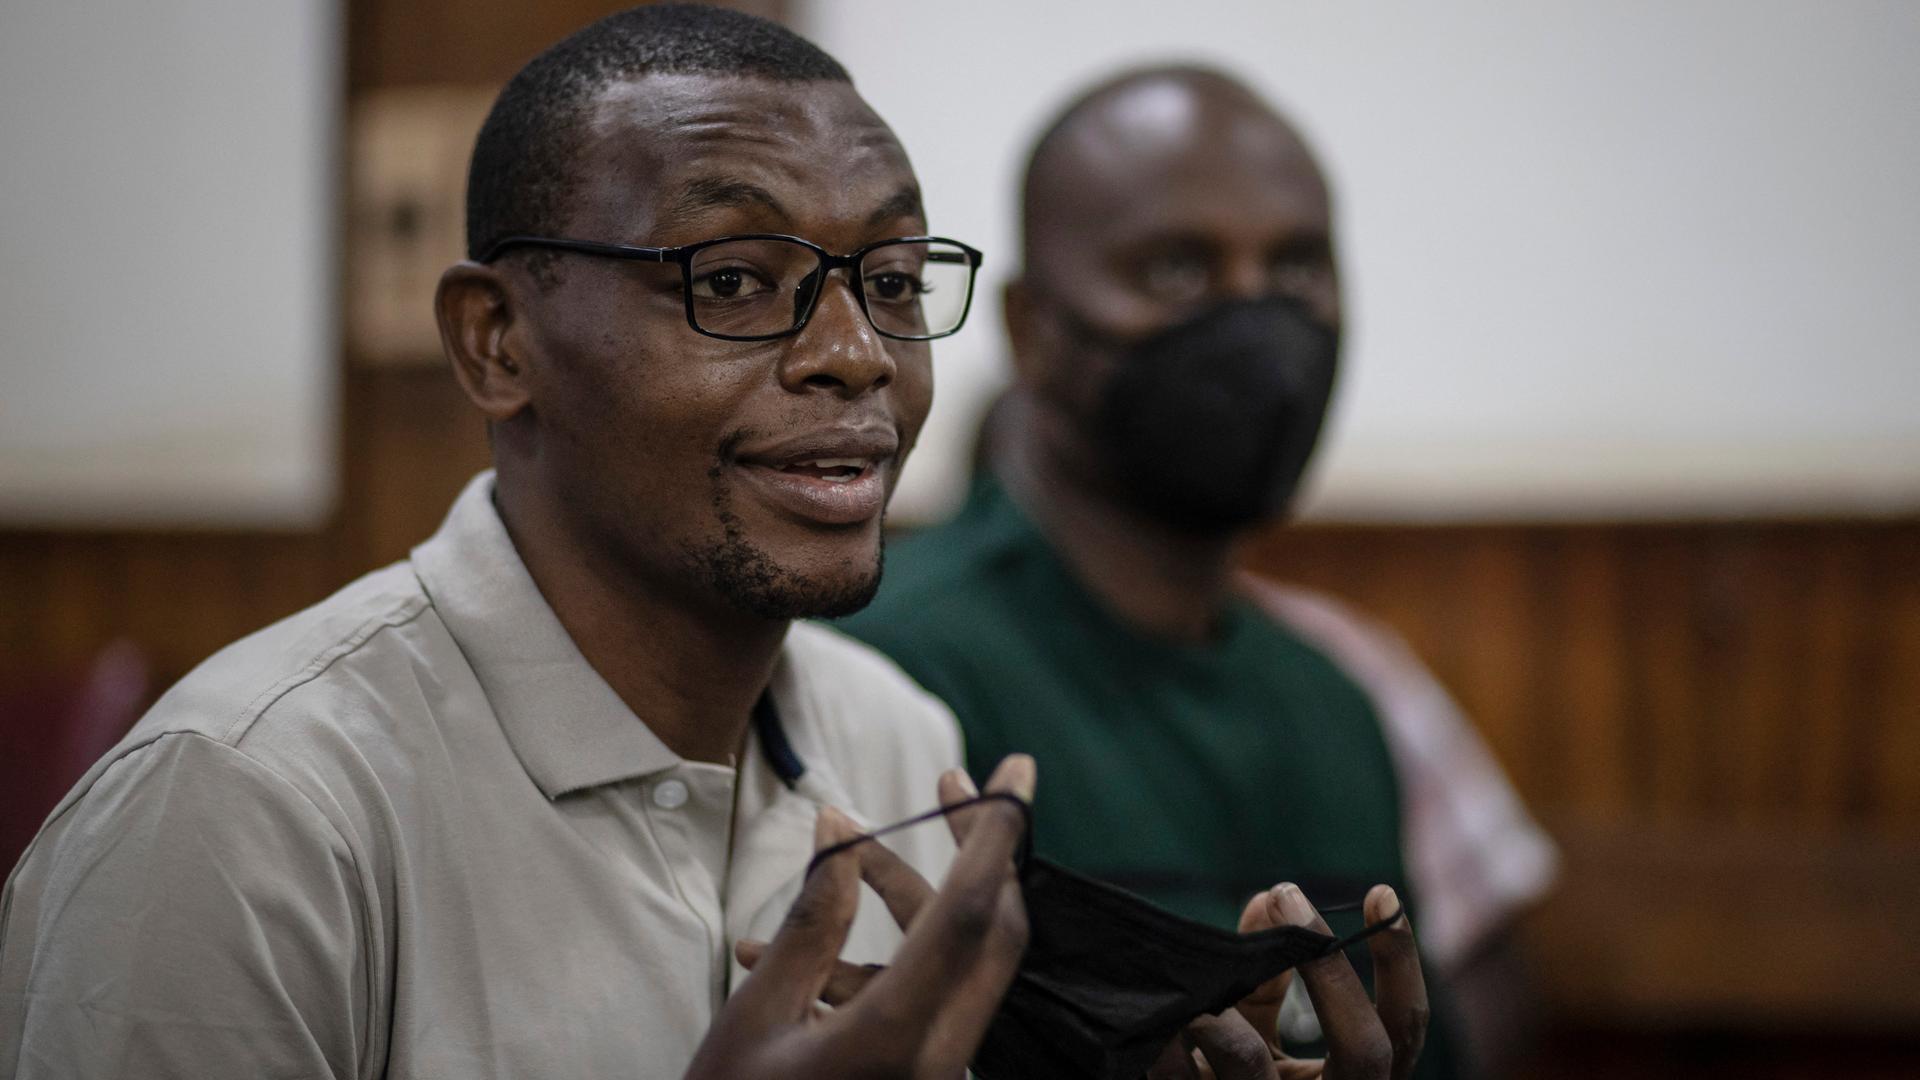 Der afrikanische Autor Kakwenza Rukirabashaija in Ugandas Hauptstadt Kampala. Er hält eine schwarze Mund-Nasen-Maske in den Händen.